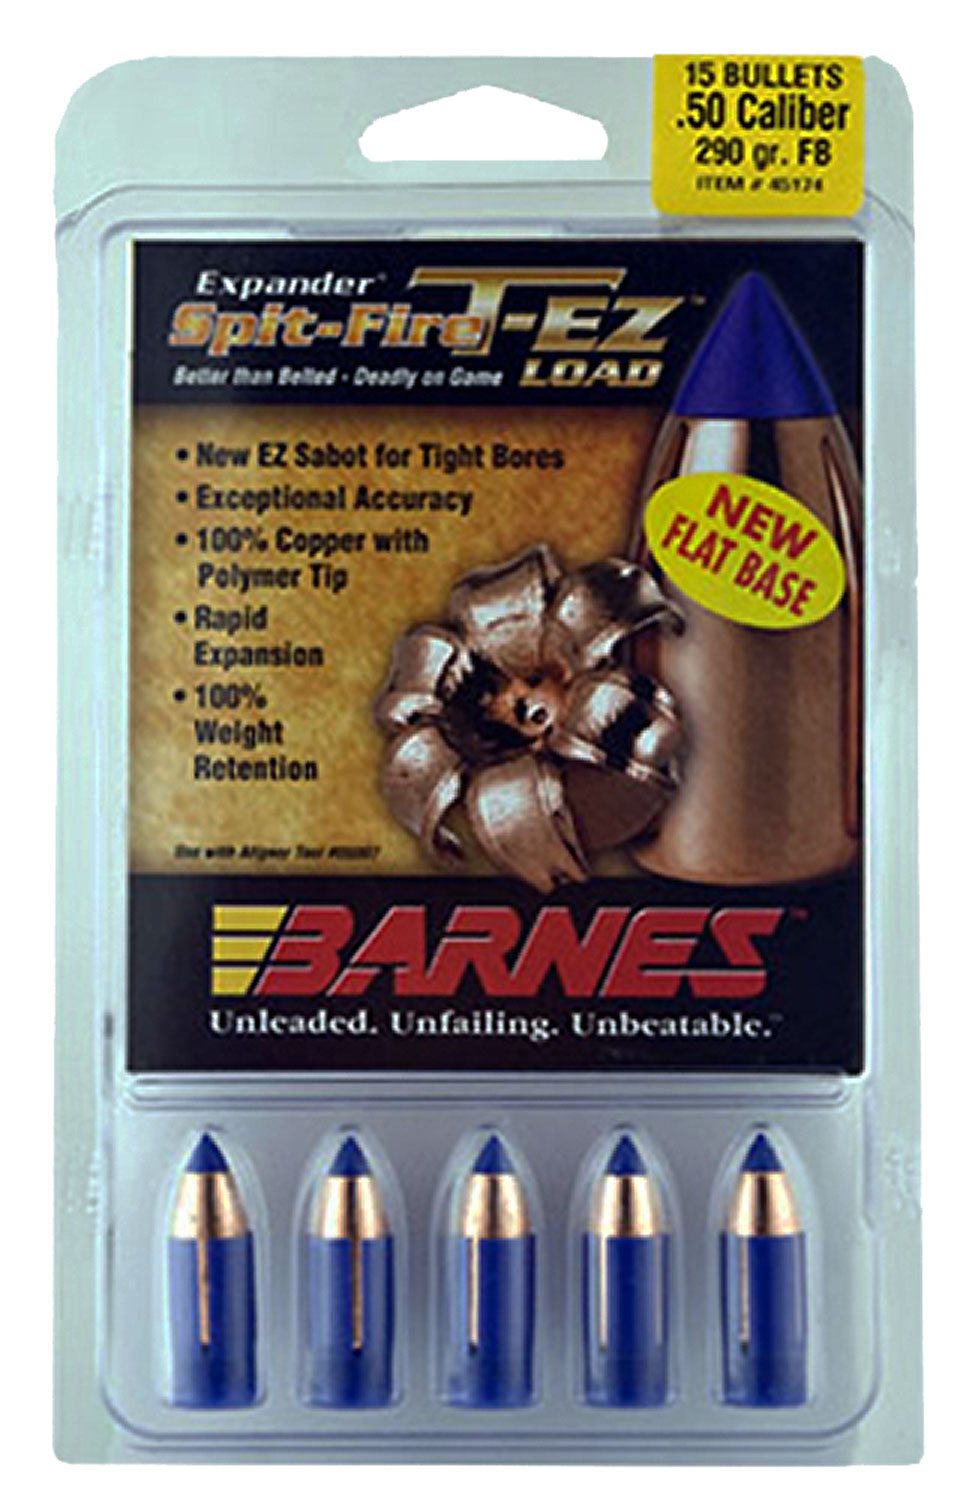 Barnes Muzzleloader Bullets